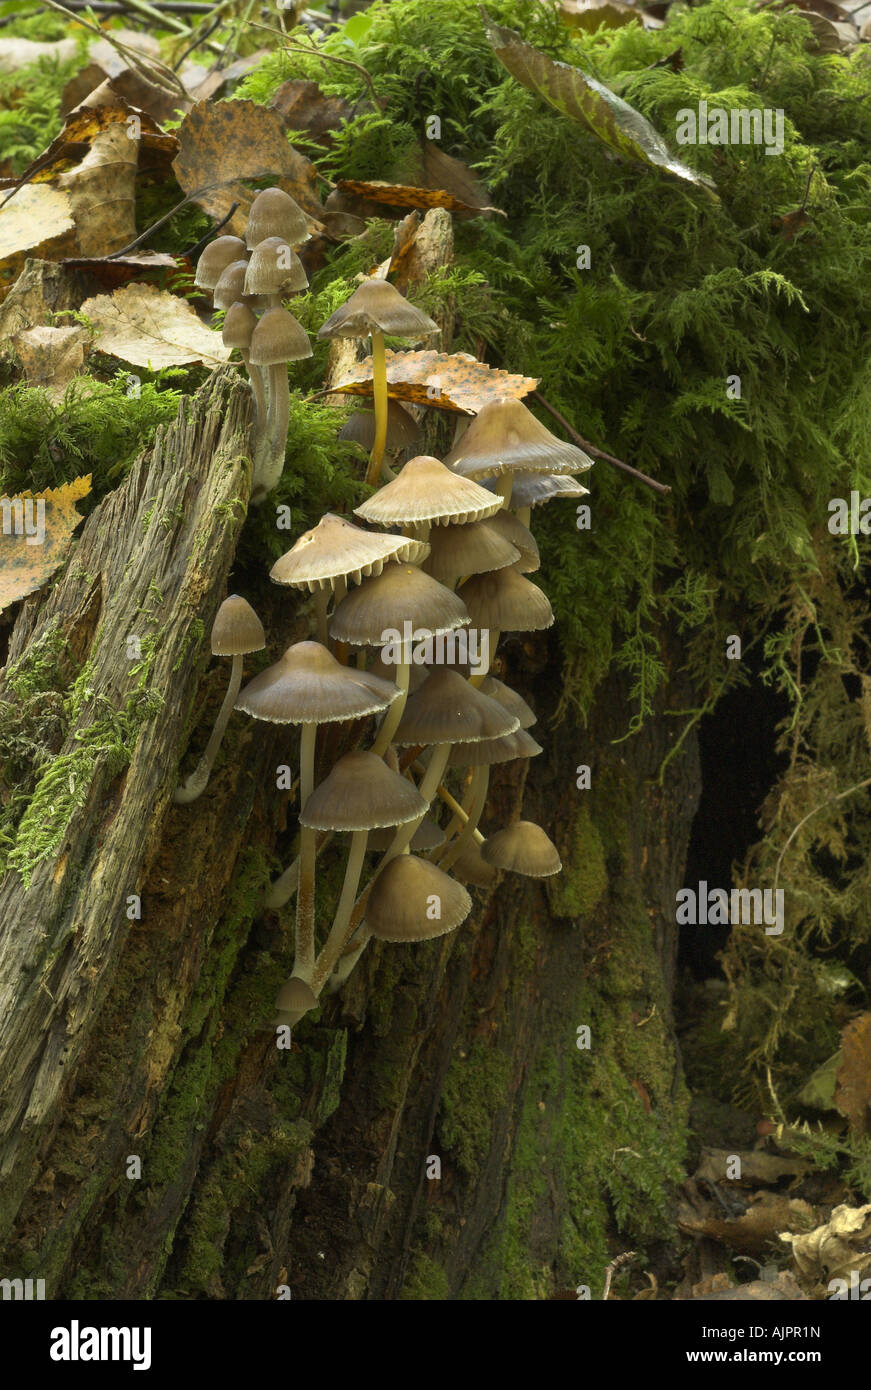 Les champignons forestiers sur souche d'arbre Banque D'Images